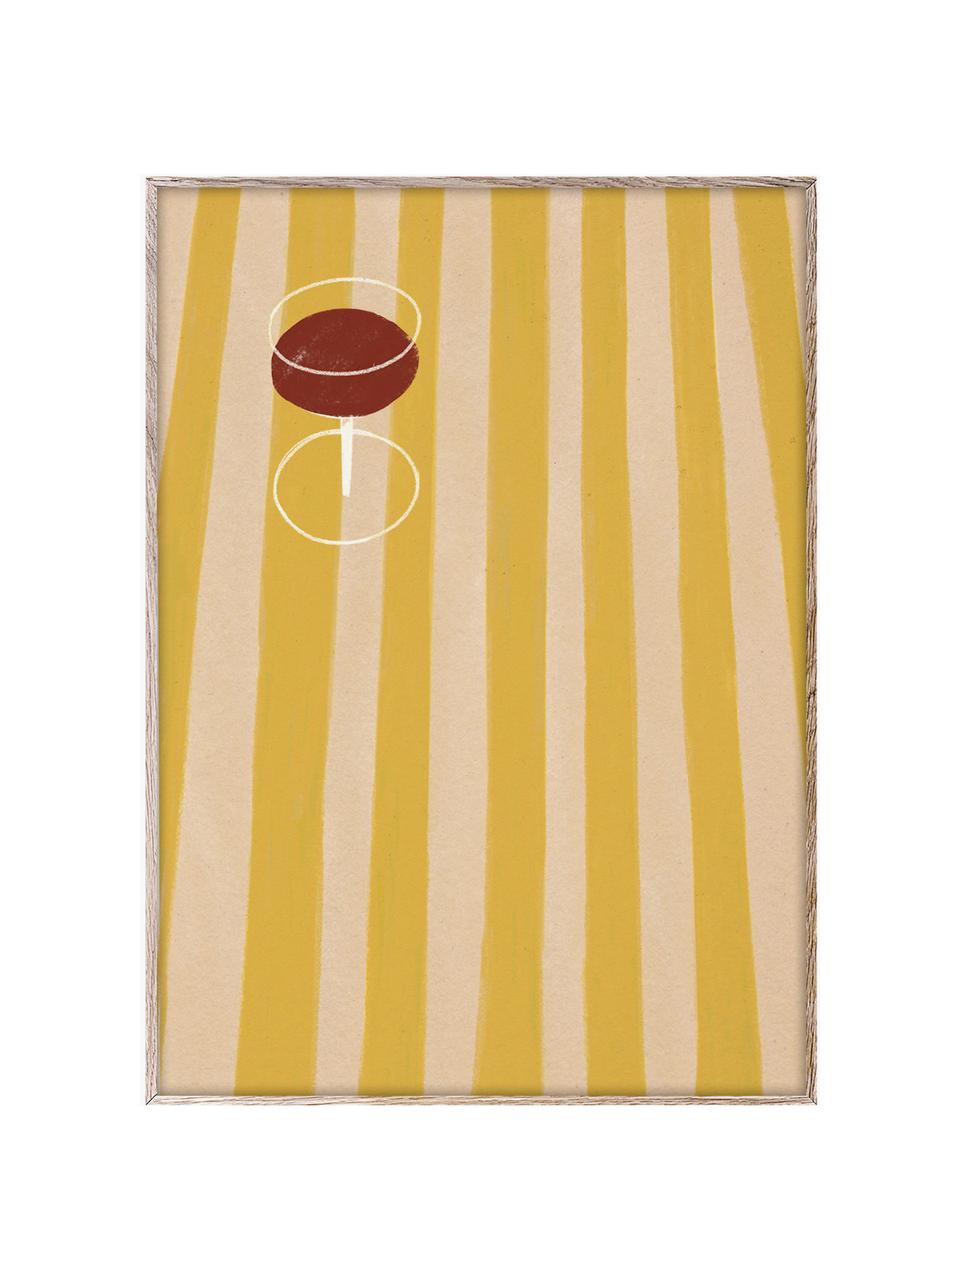 Poster SDO 04, 210 g de papier mat de la marque Hahnemühle, impression numérique avec 10 couleurs résistantes aux UV, Jaune soleil, beige, lie de vin, larg. 30 x haut. 40 cm